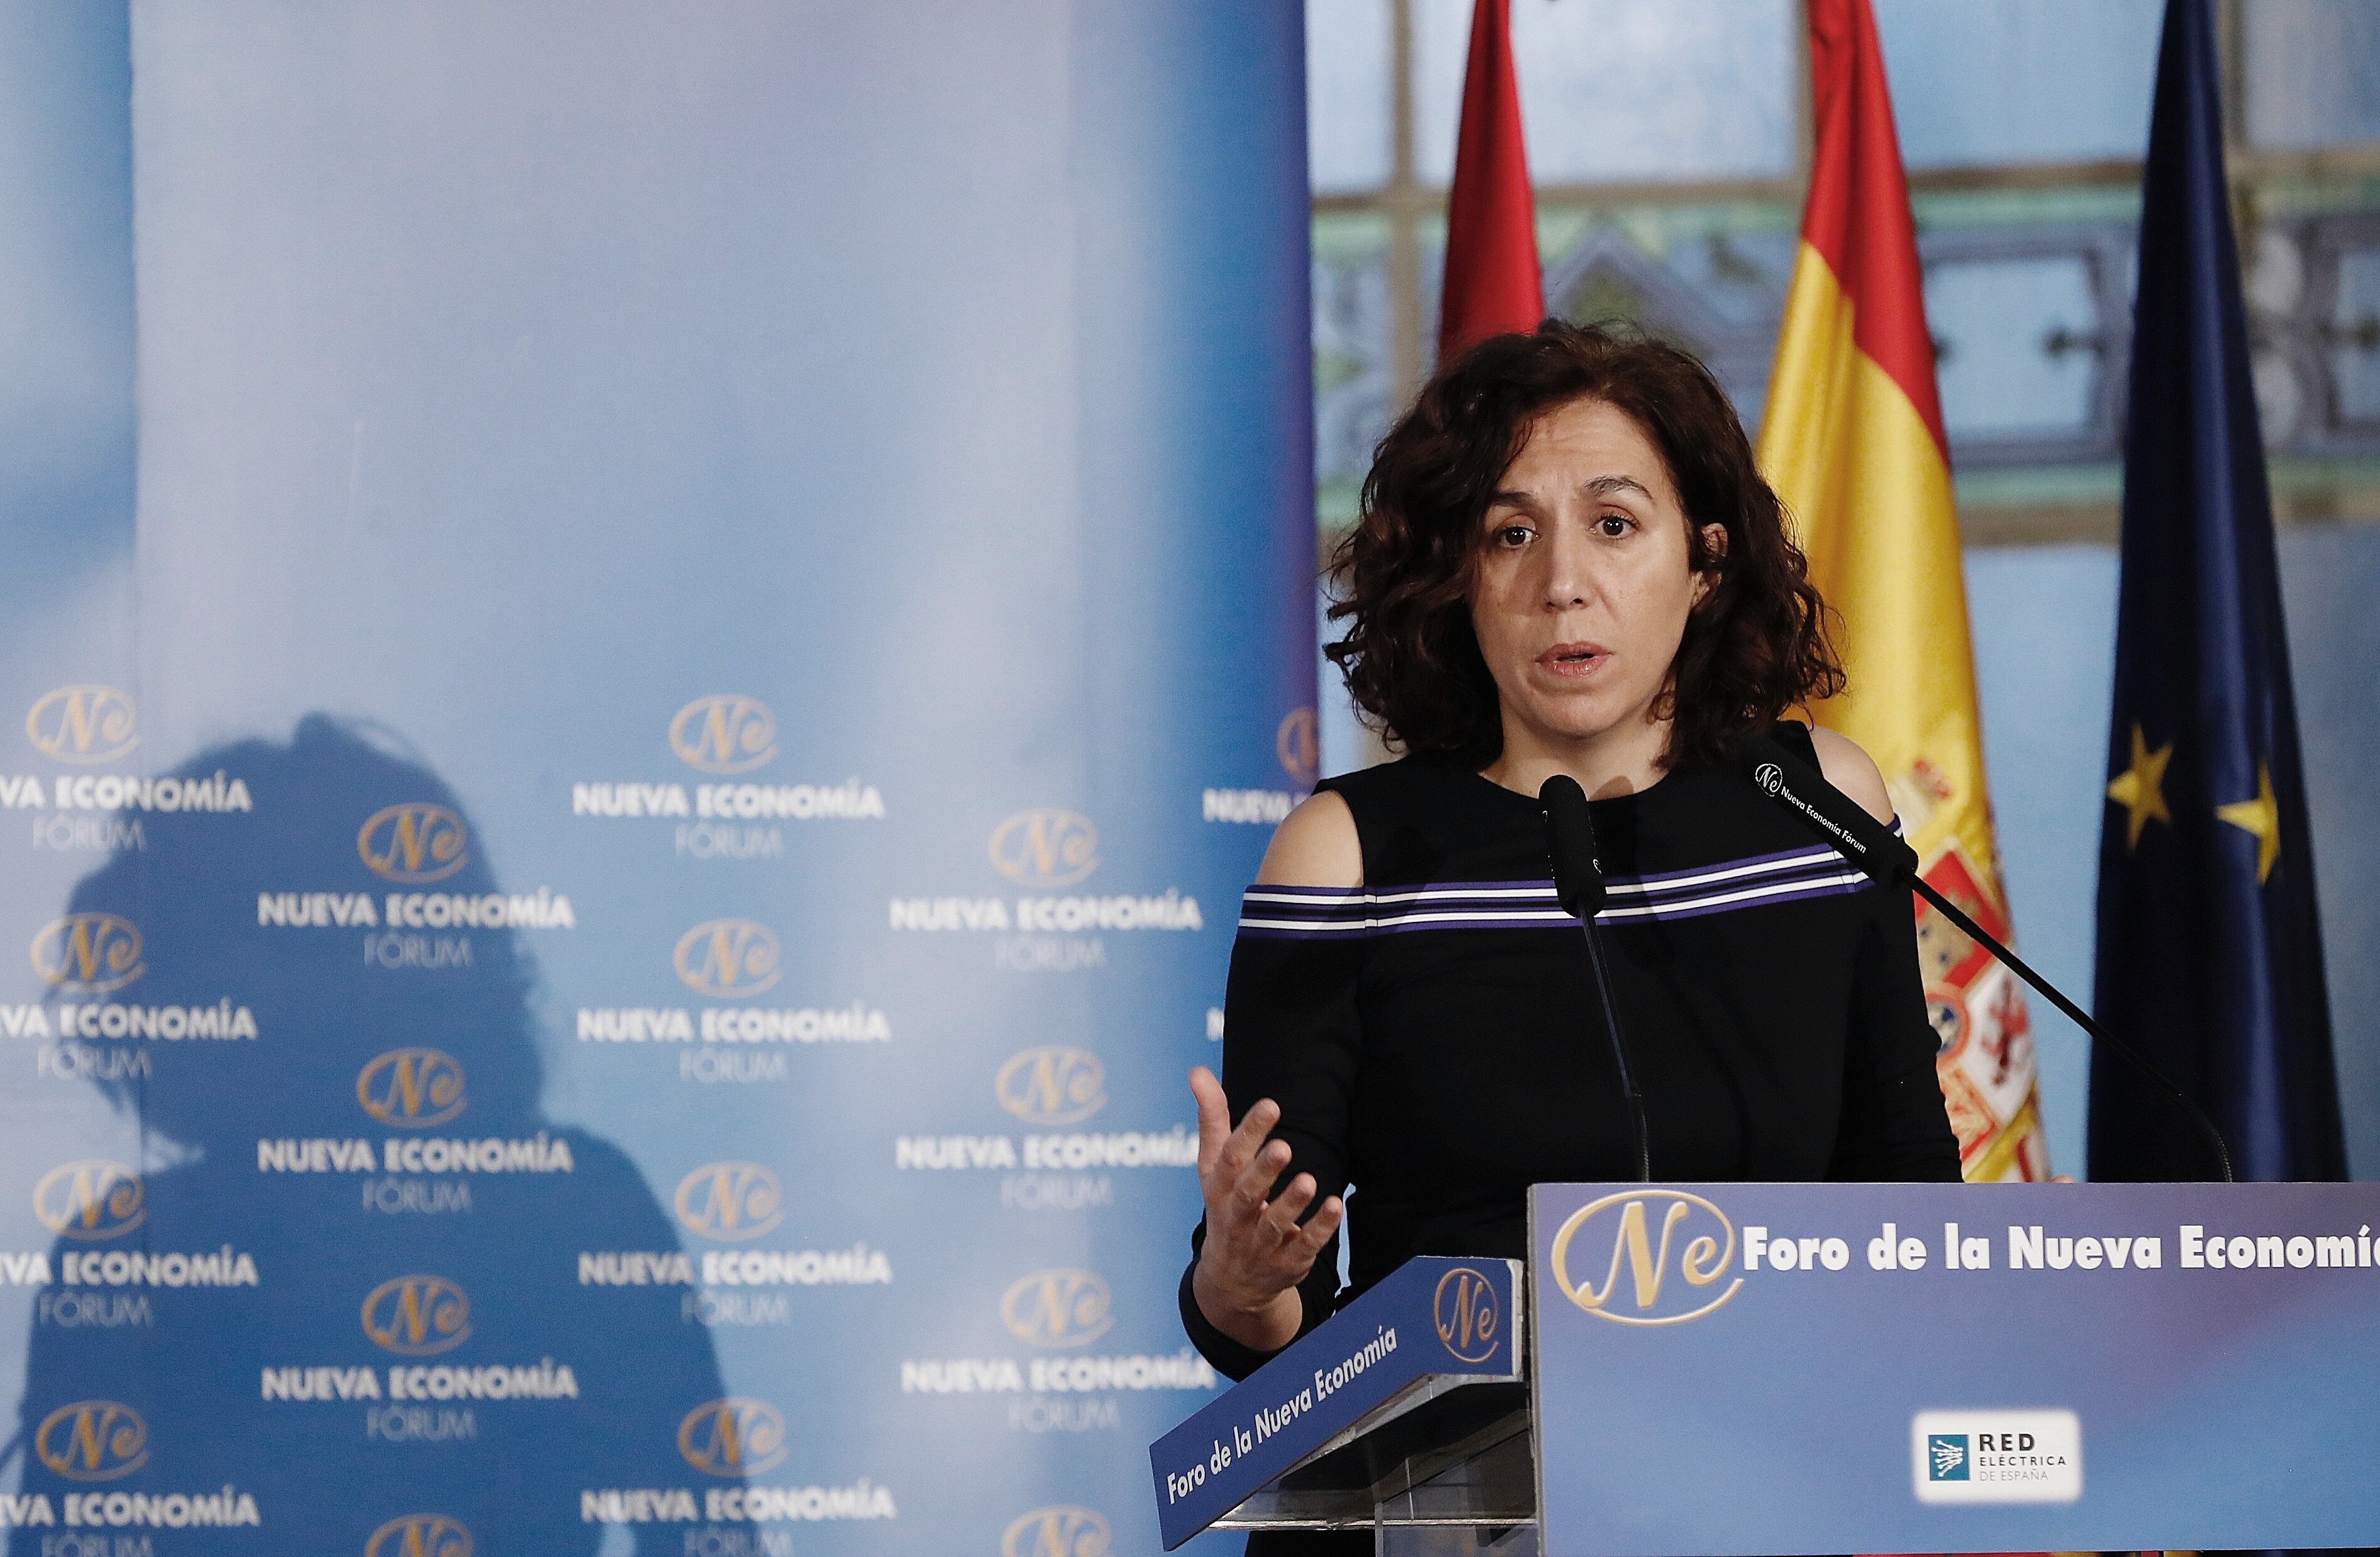 Irene Lozano: "Llevo en la muñeca la bandera de España y no me da alergia"